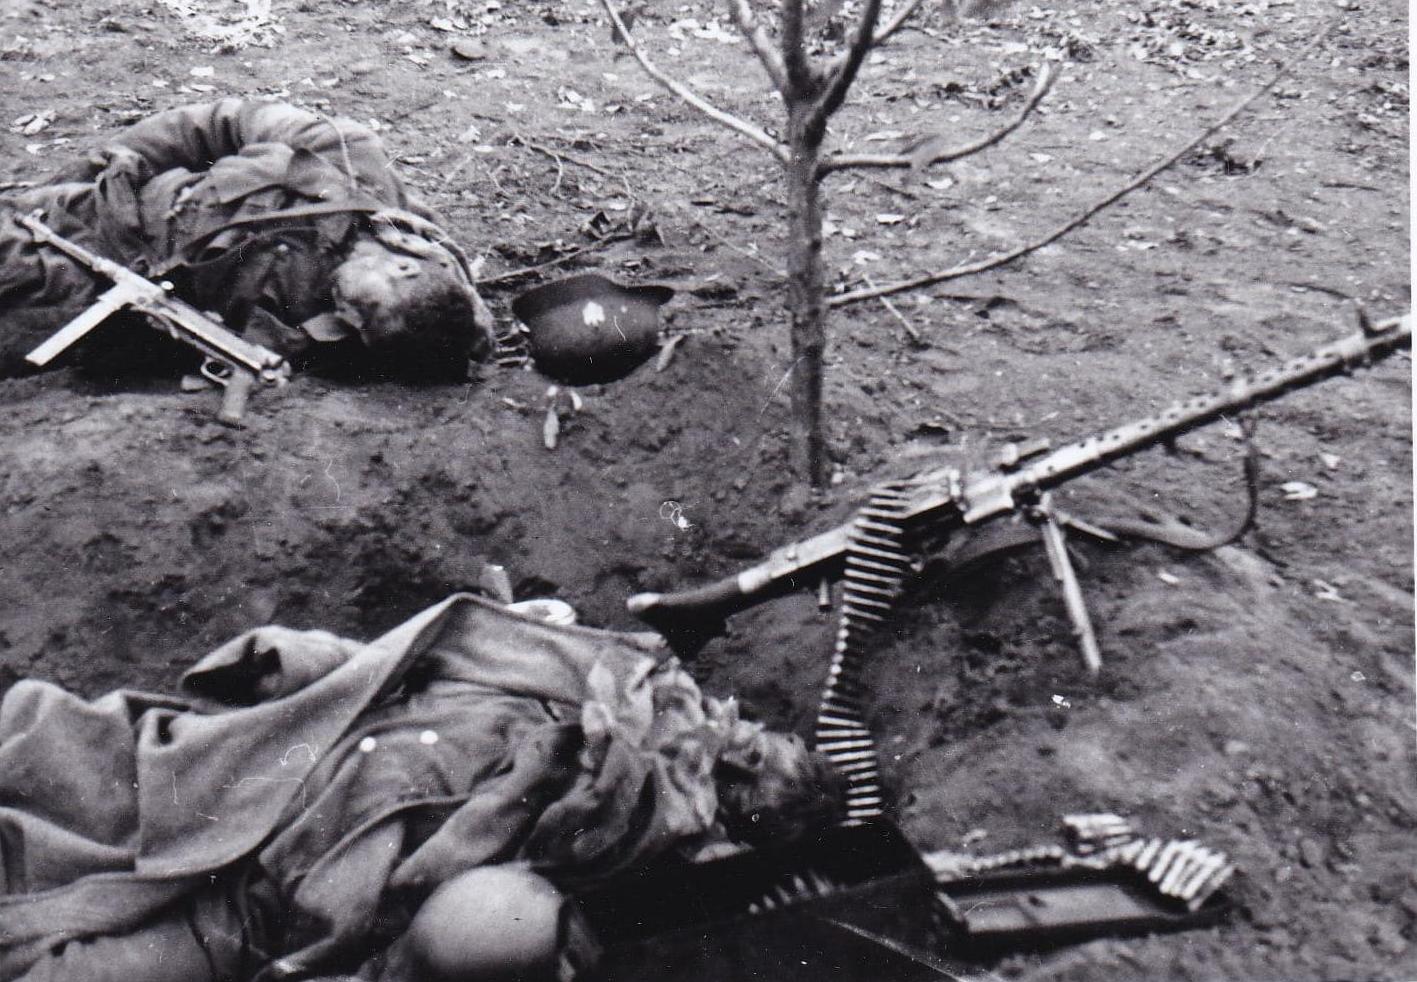 Бои на ул. Володарского (видны убитые немцы) в г. Мелитополь. 1943.